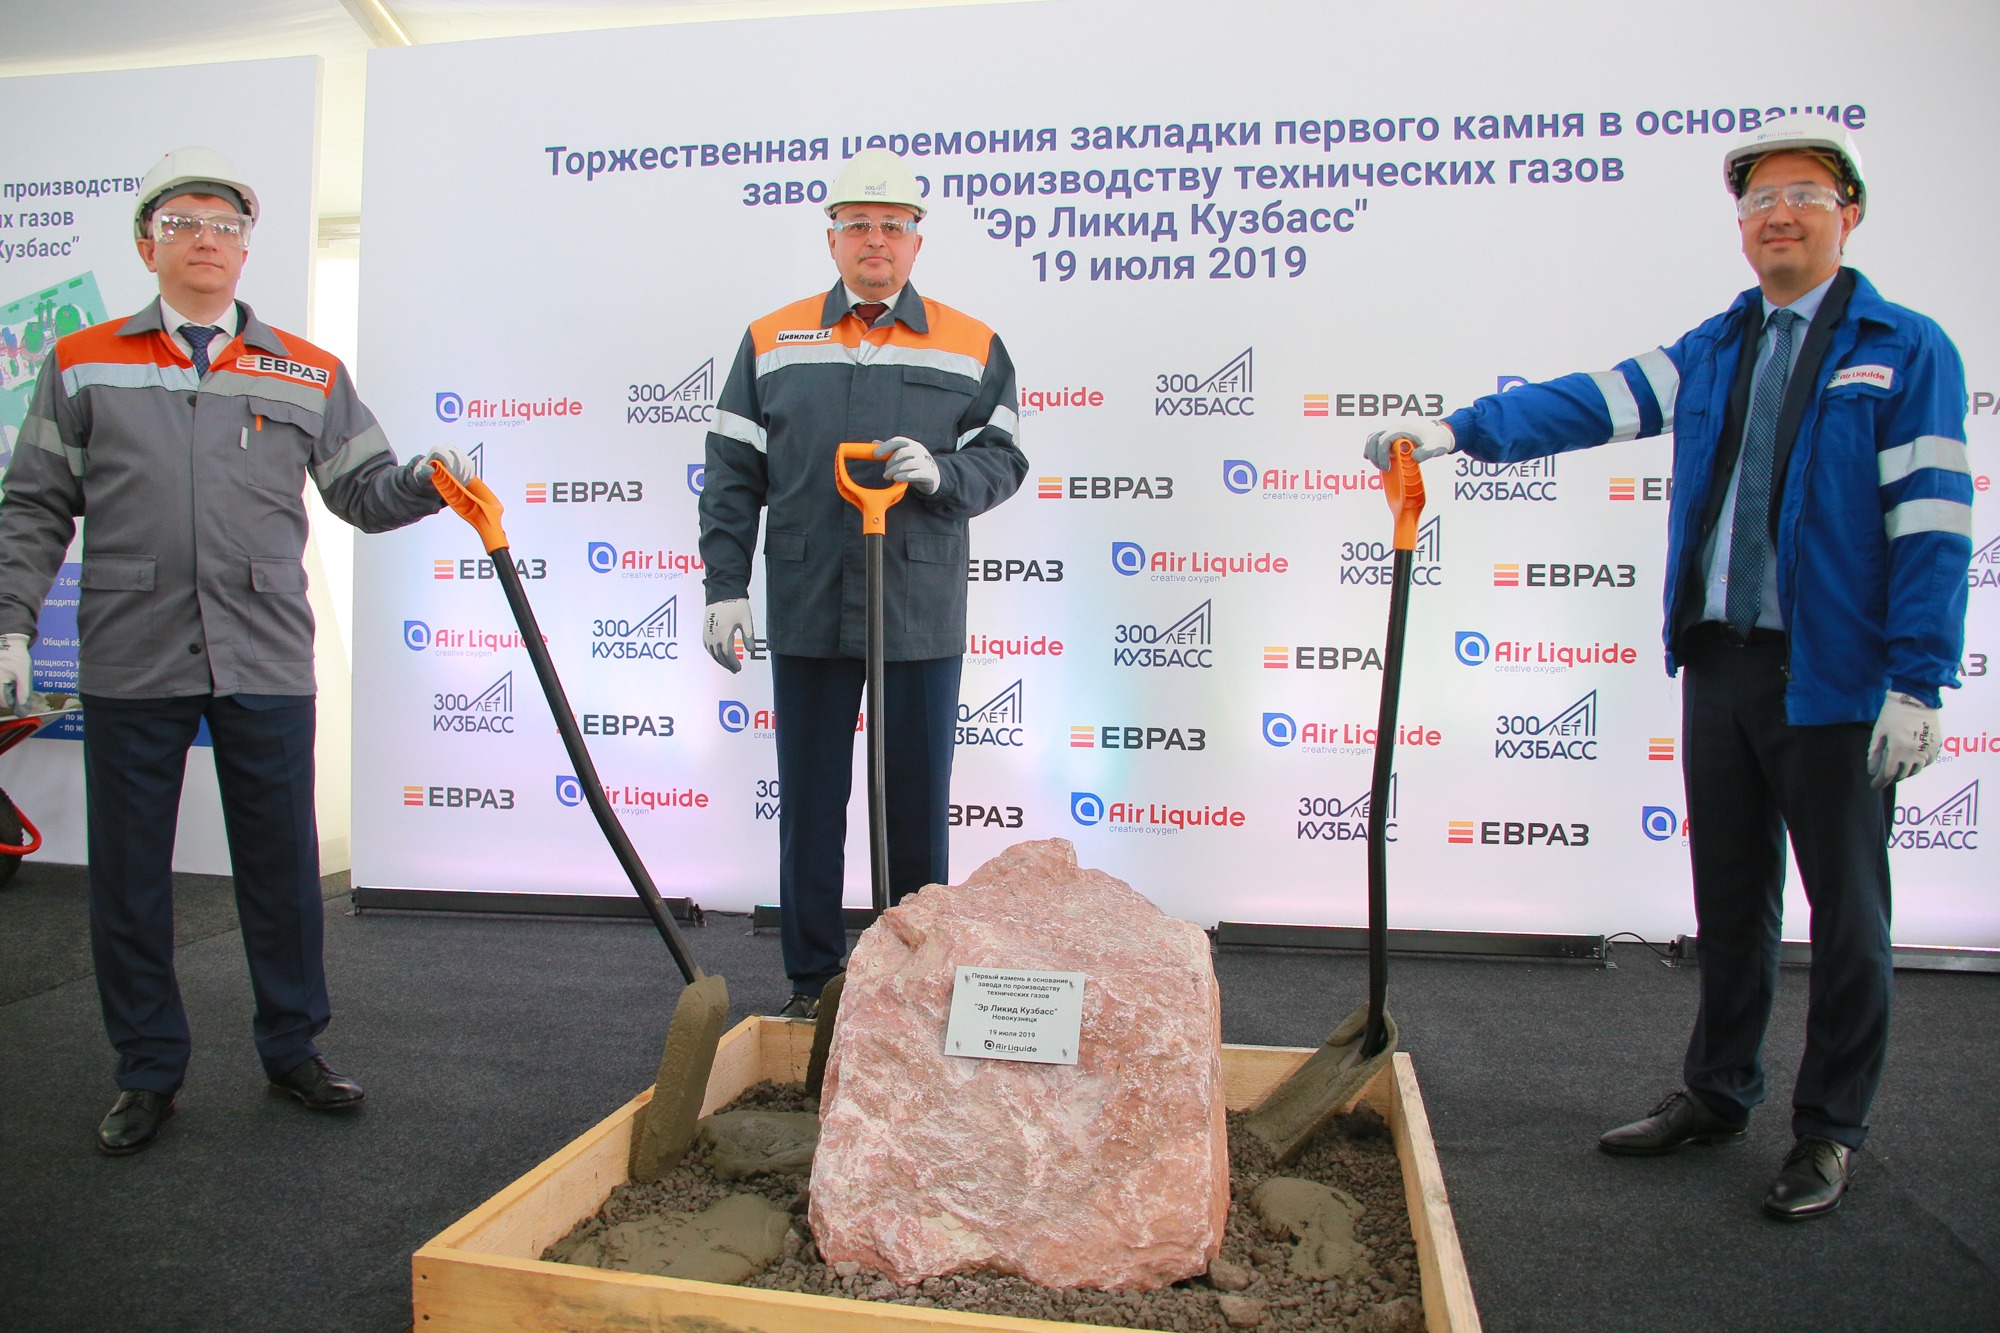 «Эр Ликид Кузбасс» включен в перечень инвестиционных проектов Кемеровской области